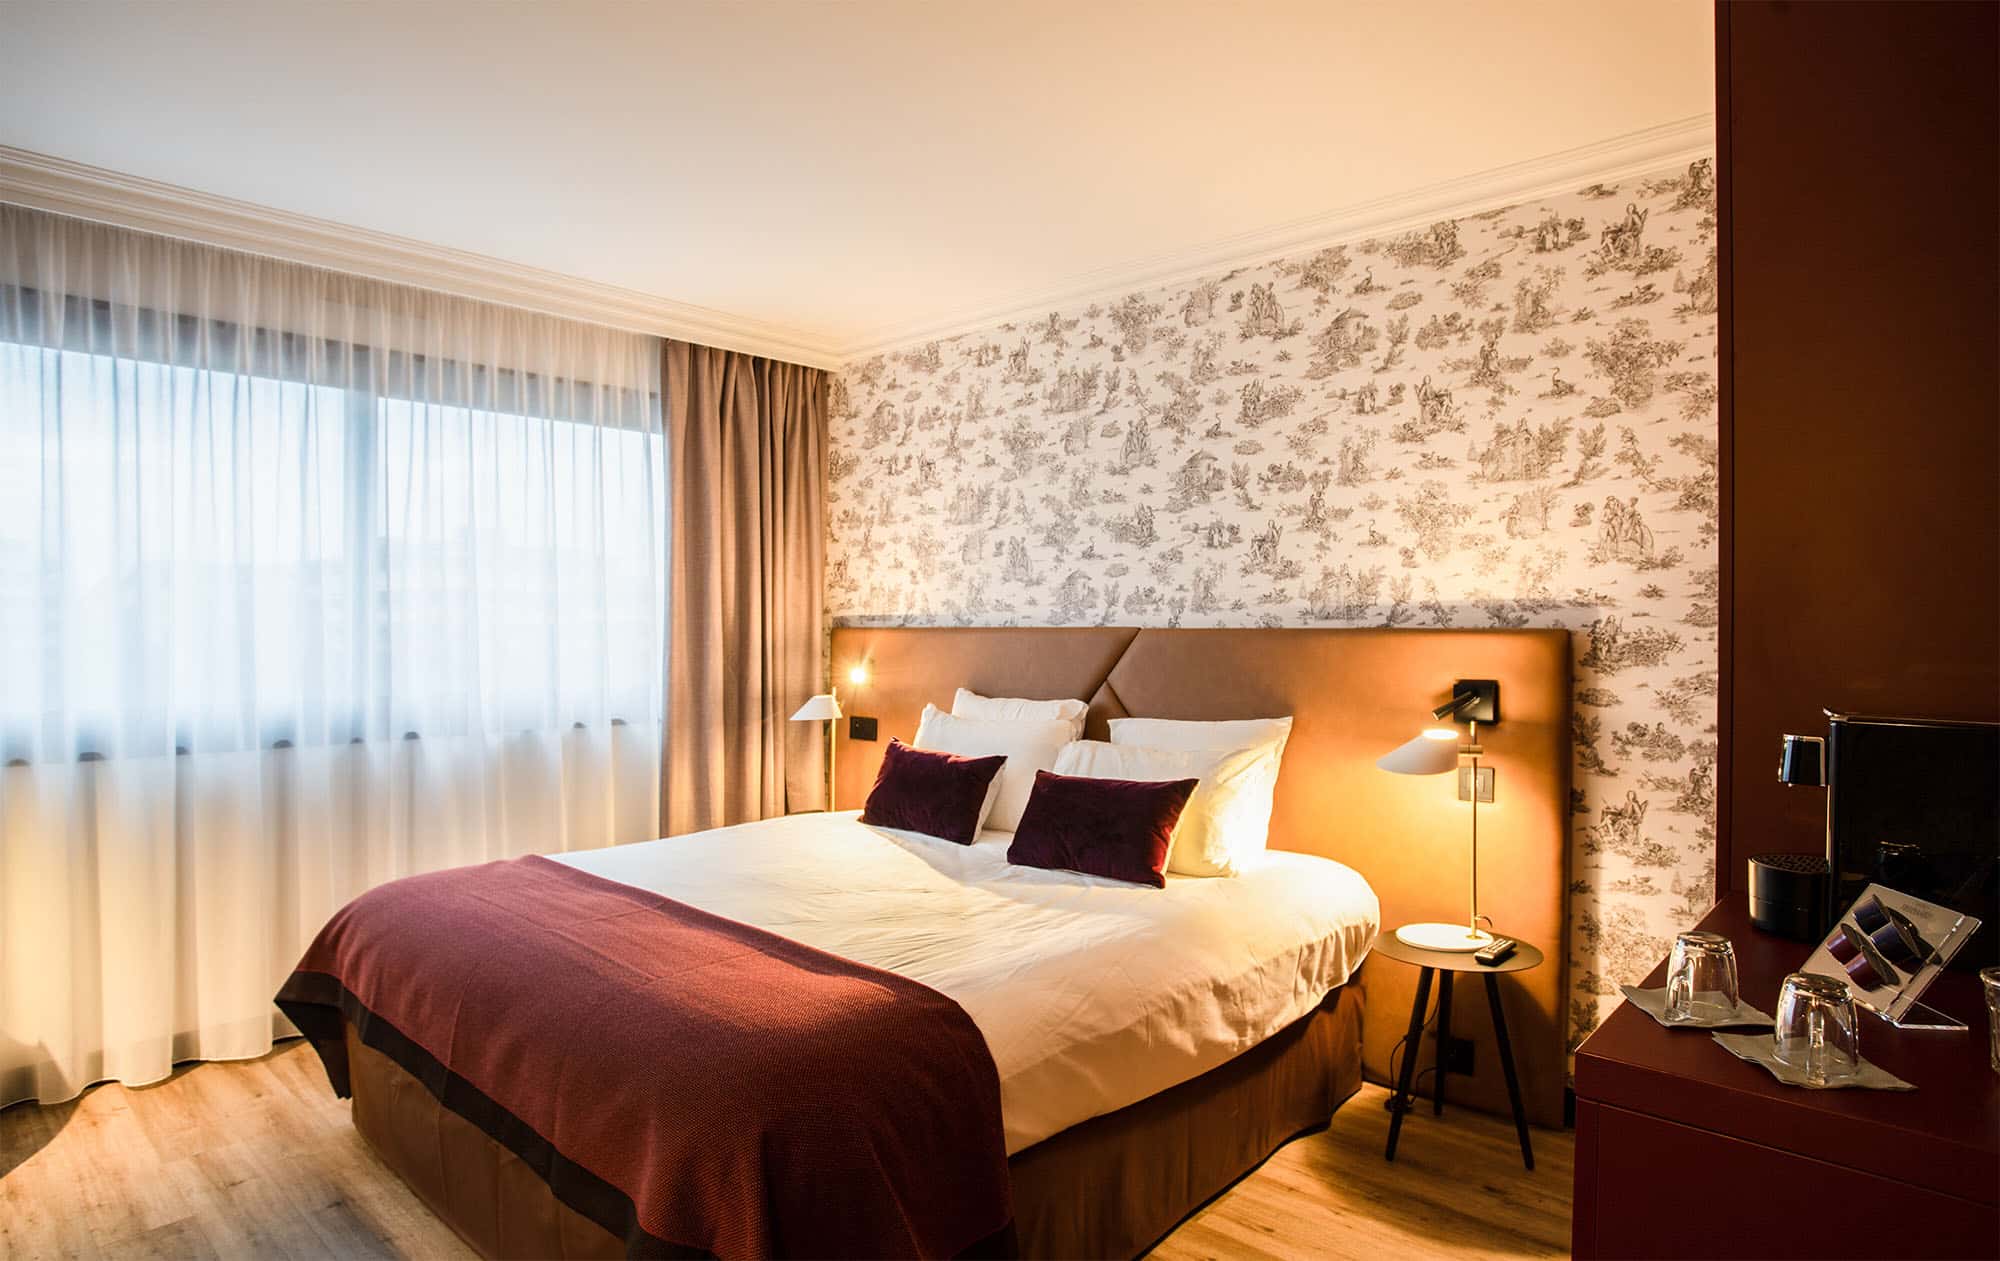 Appart’City Ferney Voltaire vous propose également un service hôtelier et des chambres équipées pour un séjour avec votre équipe à Genève